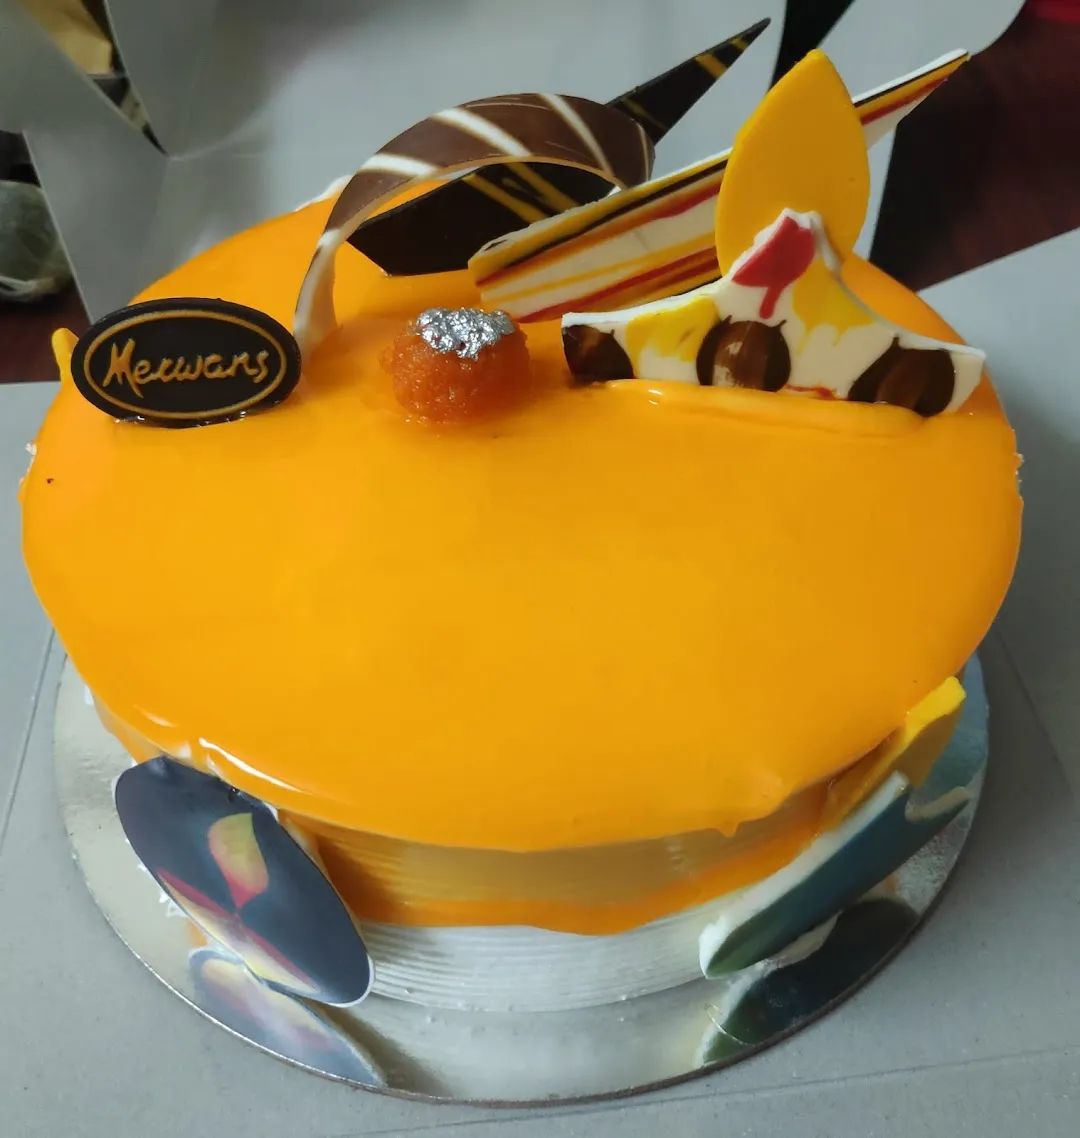 Share 131+ merwans cake online order latest - kidsdream.edu.vn